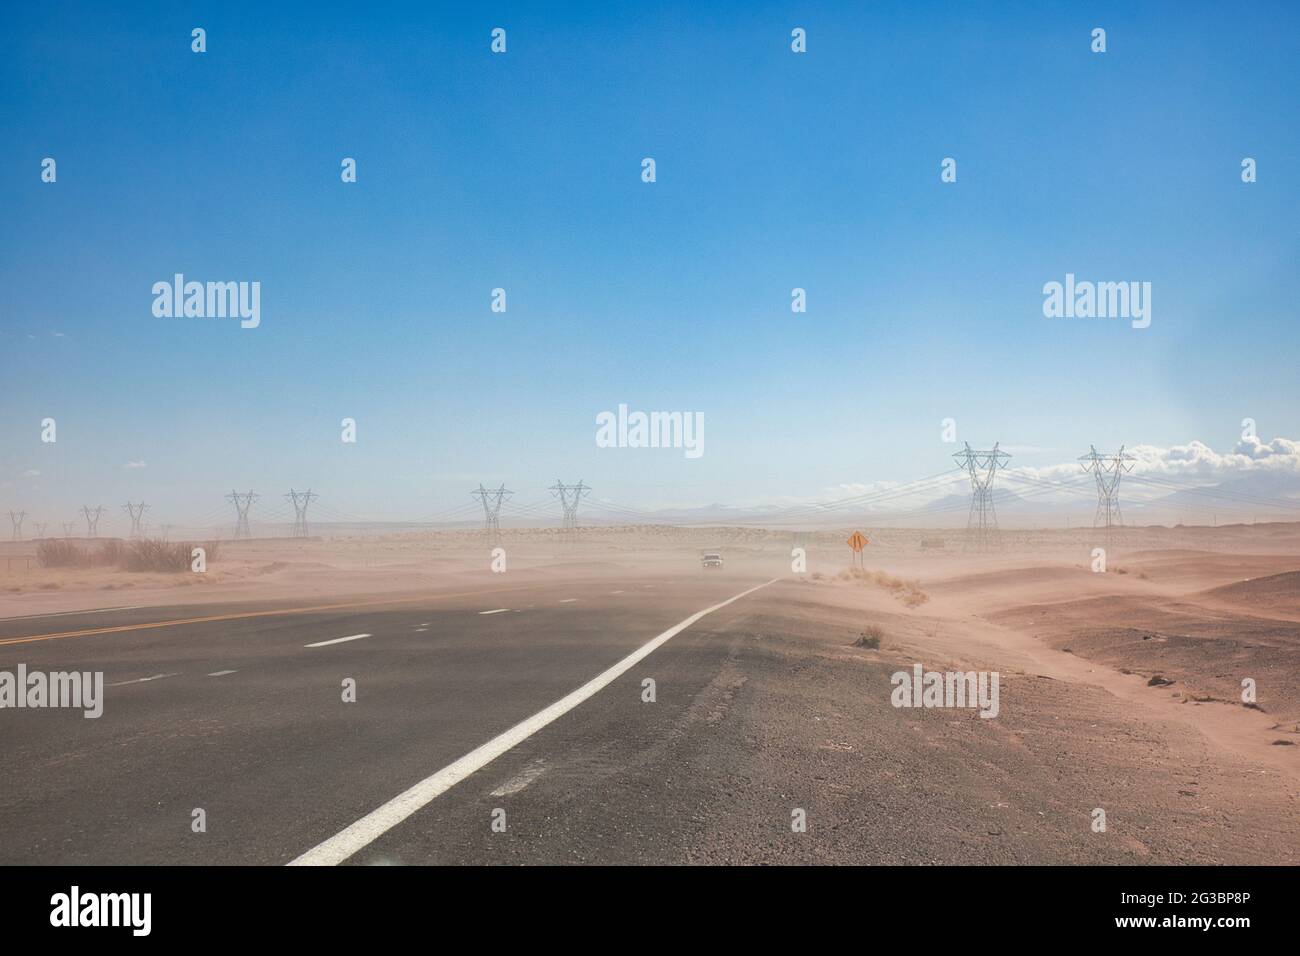 Pylônes d'électricité et les câbles qu'ils transportent traversent une route en semi-désert avec une couche de poussière qui souffle sur la route en Arizona, aux États-Unis Banque D'Images